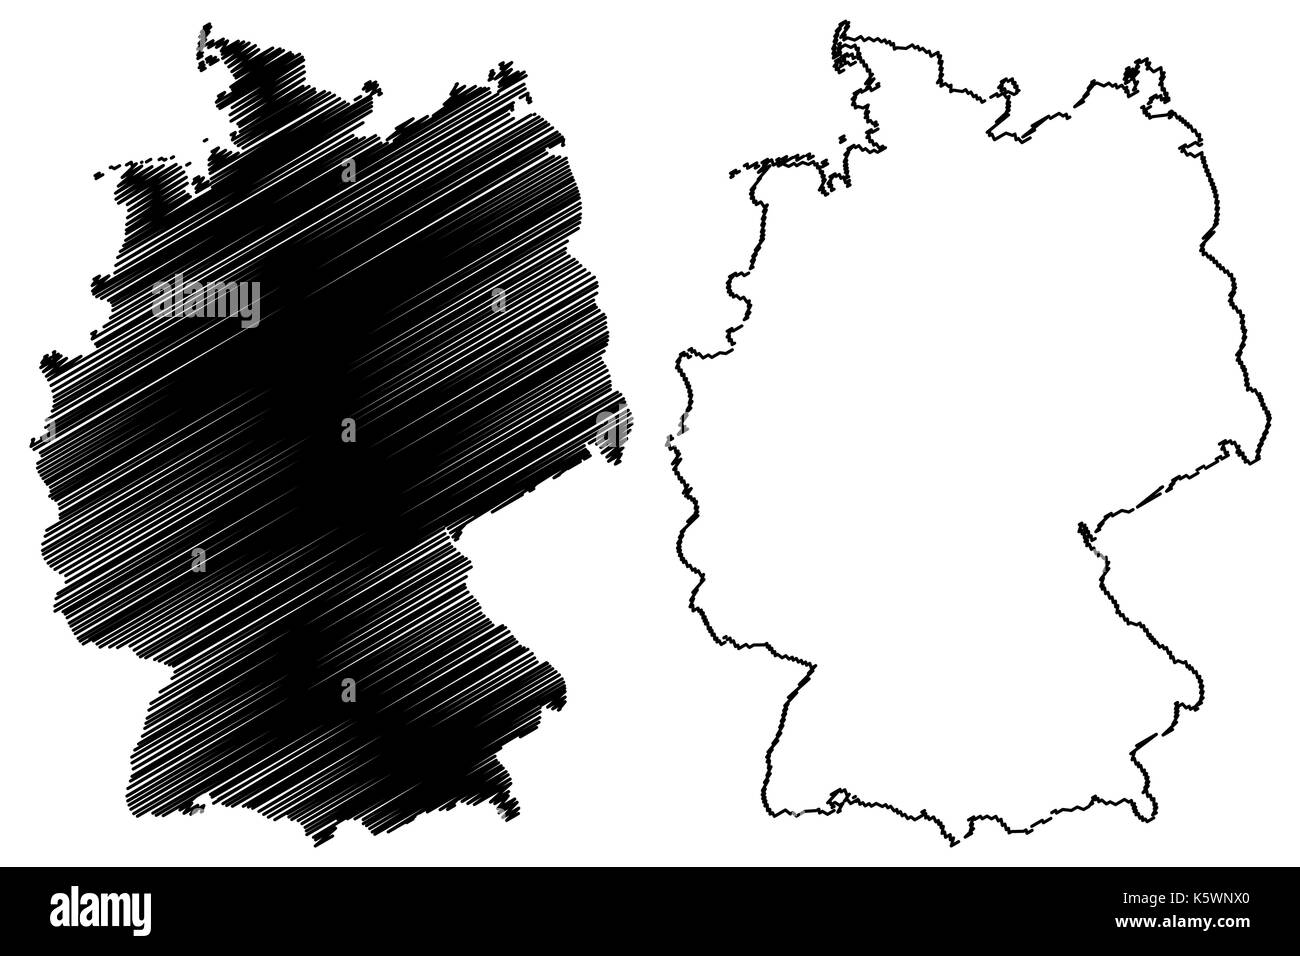 Alemania mapa ilustración vectorial, scribble sketch alemania Ilustración del Vector